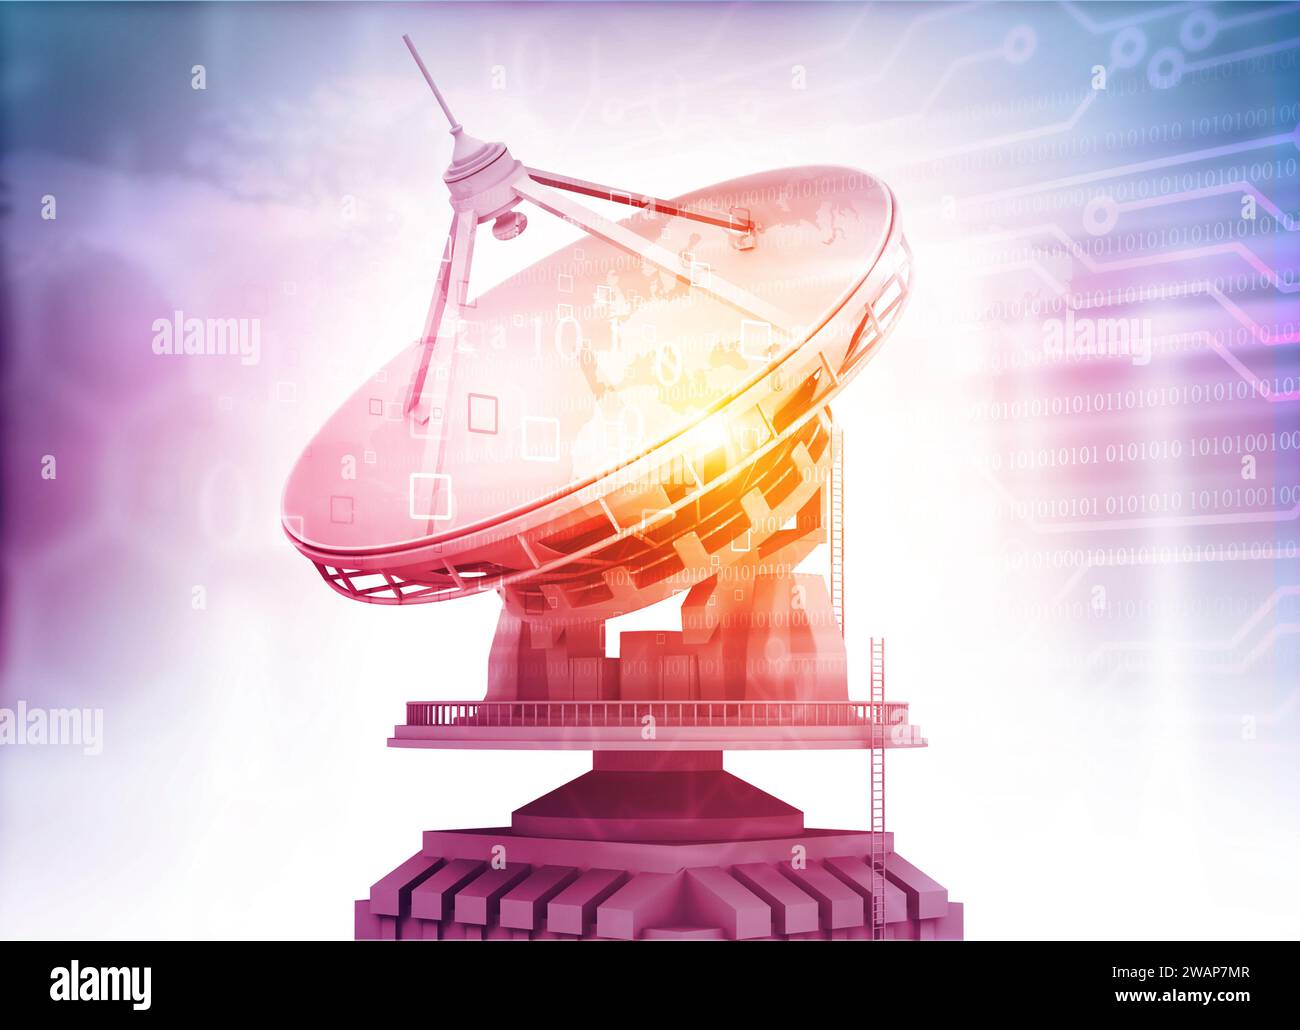 Antenne parabolique recevant des signaux. illustration 3d. Banque D'Images